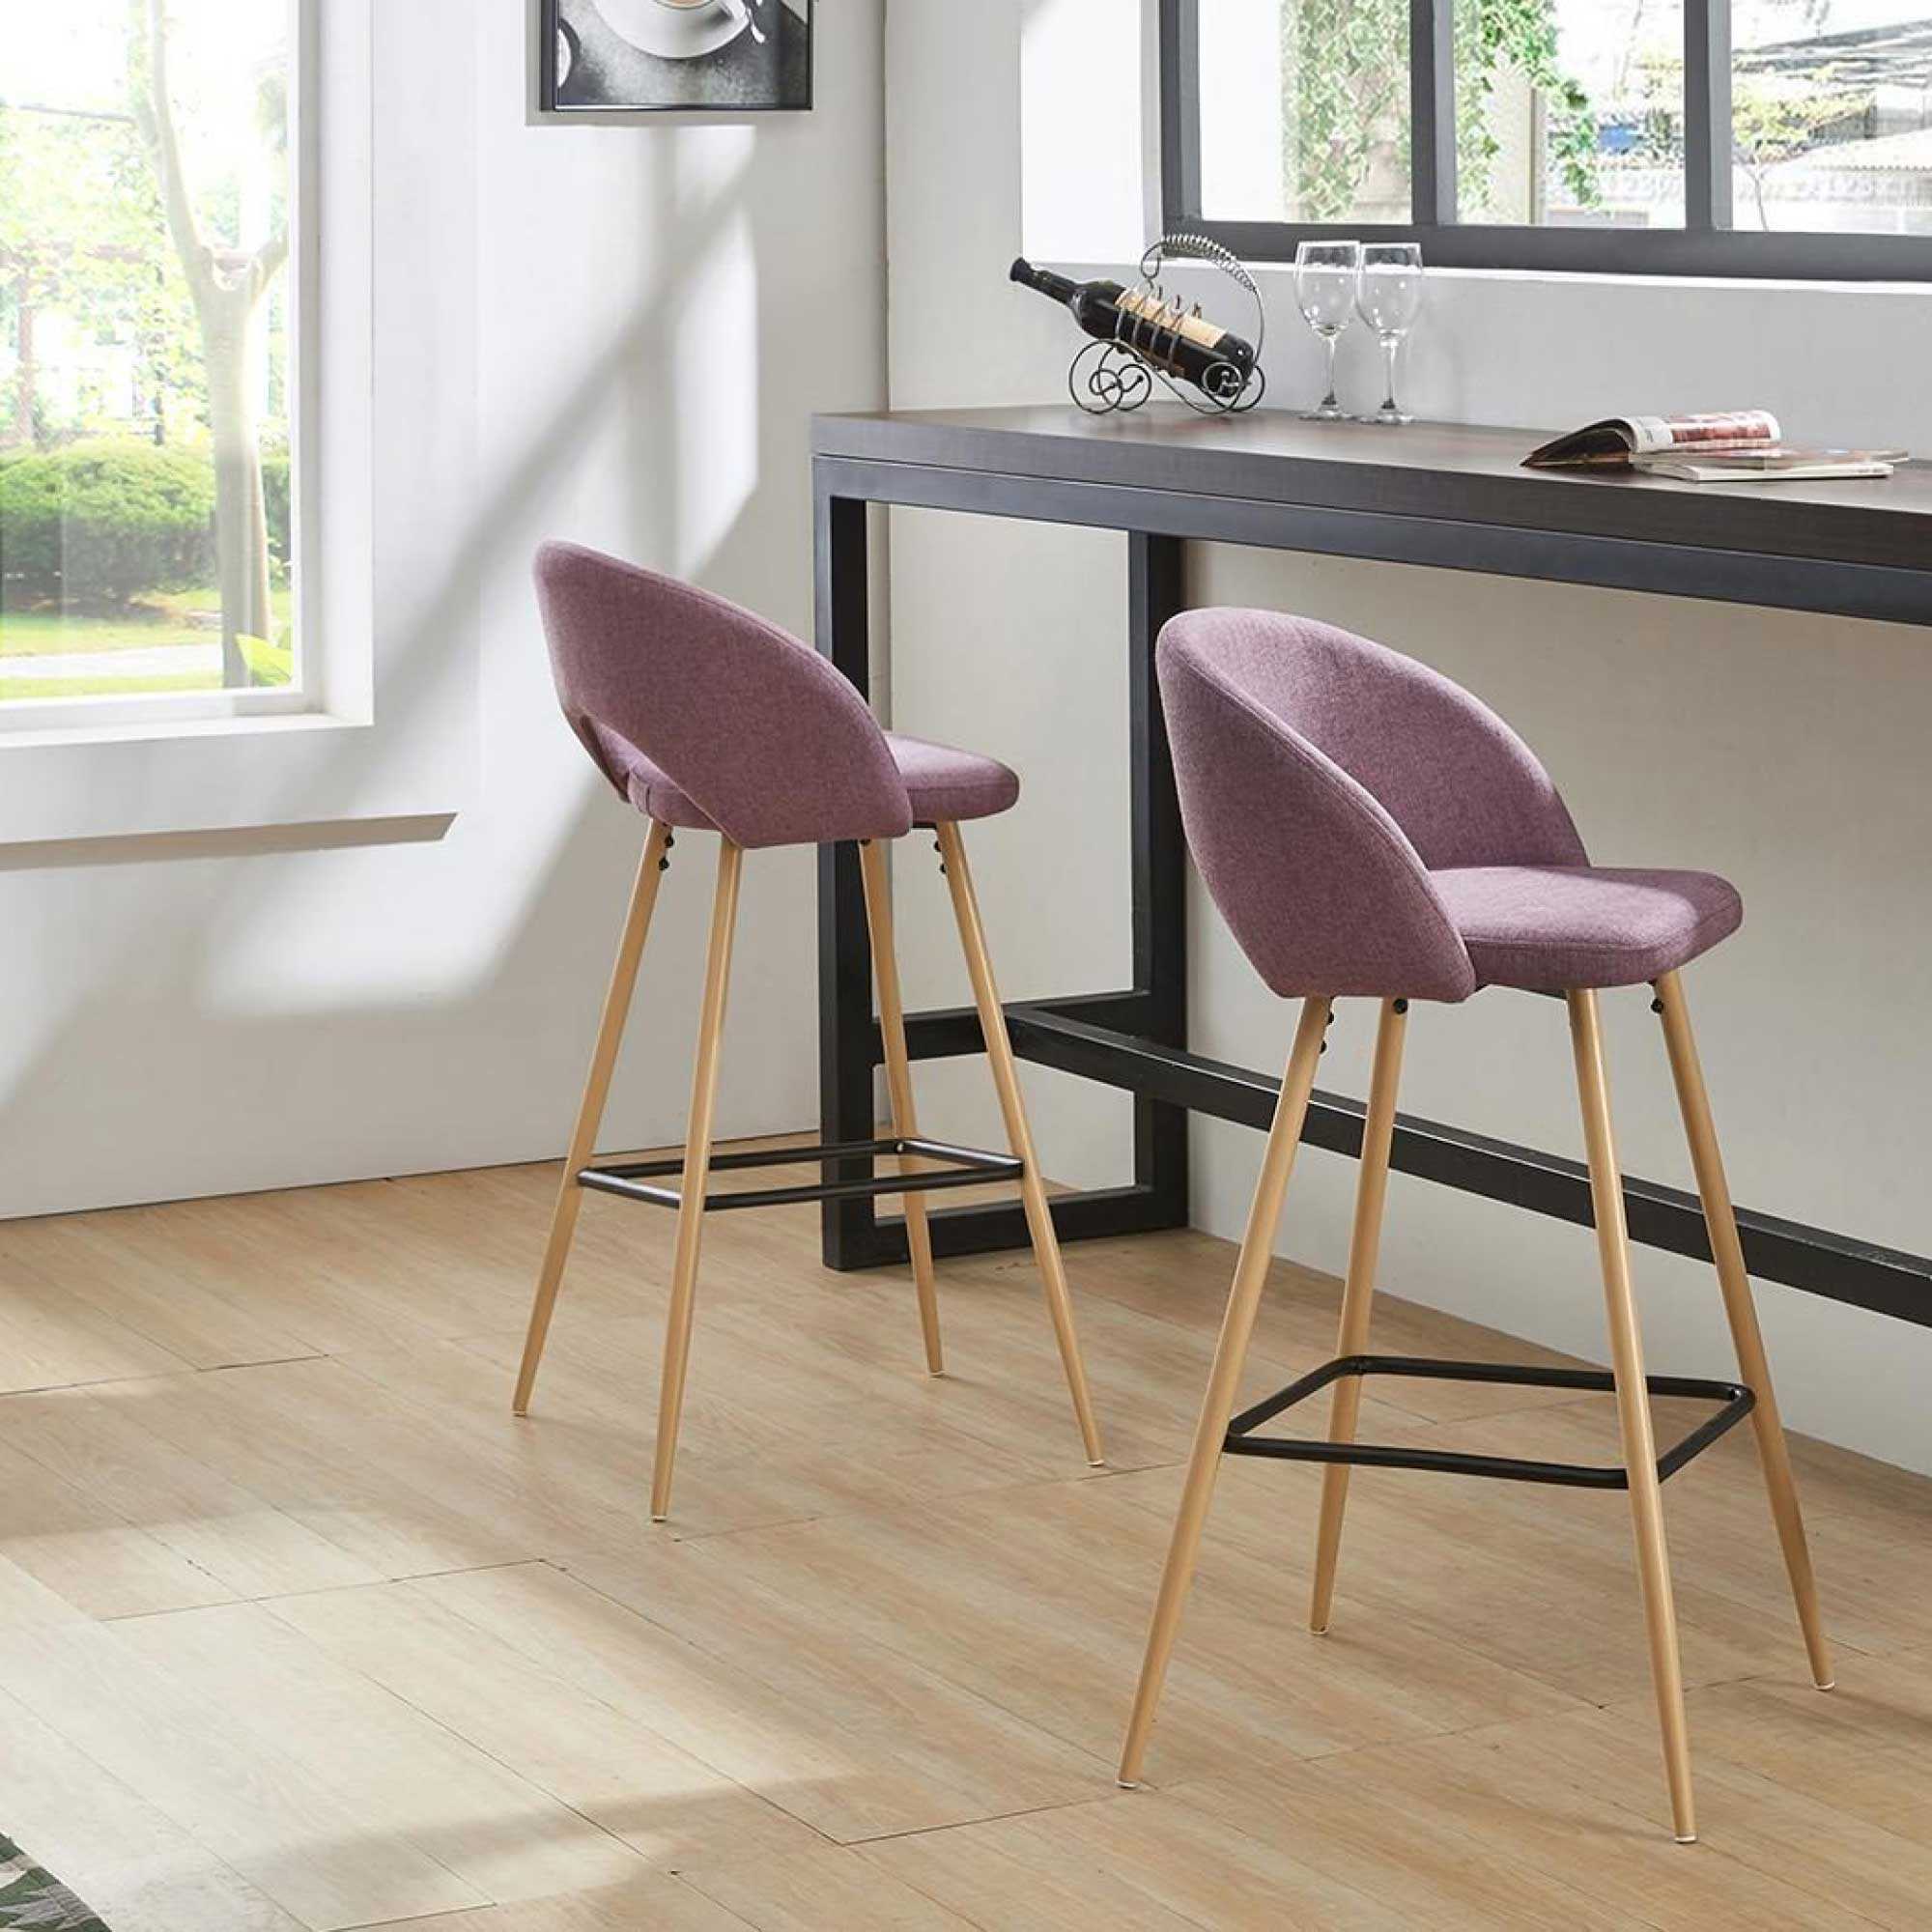 Барные стулья для кухни: виды моделей, как выбрать?